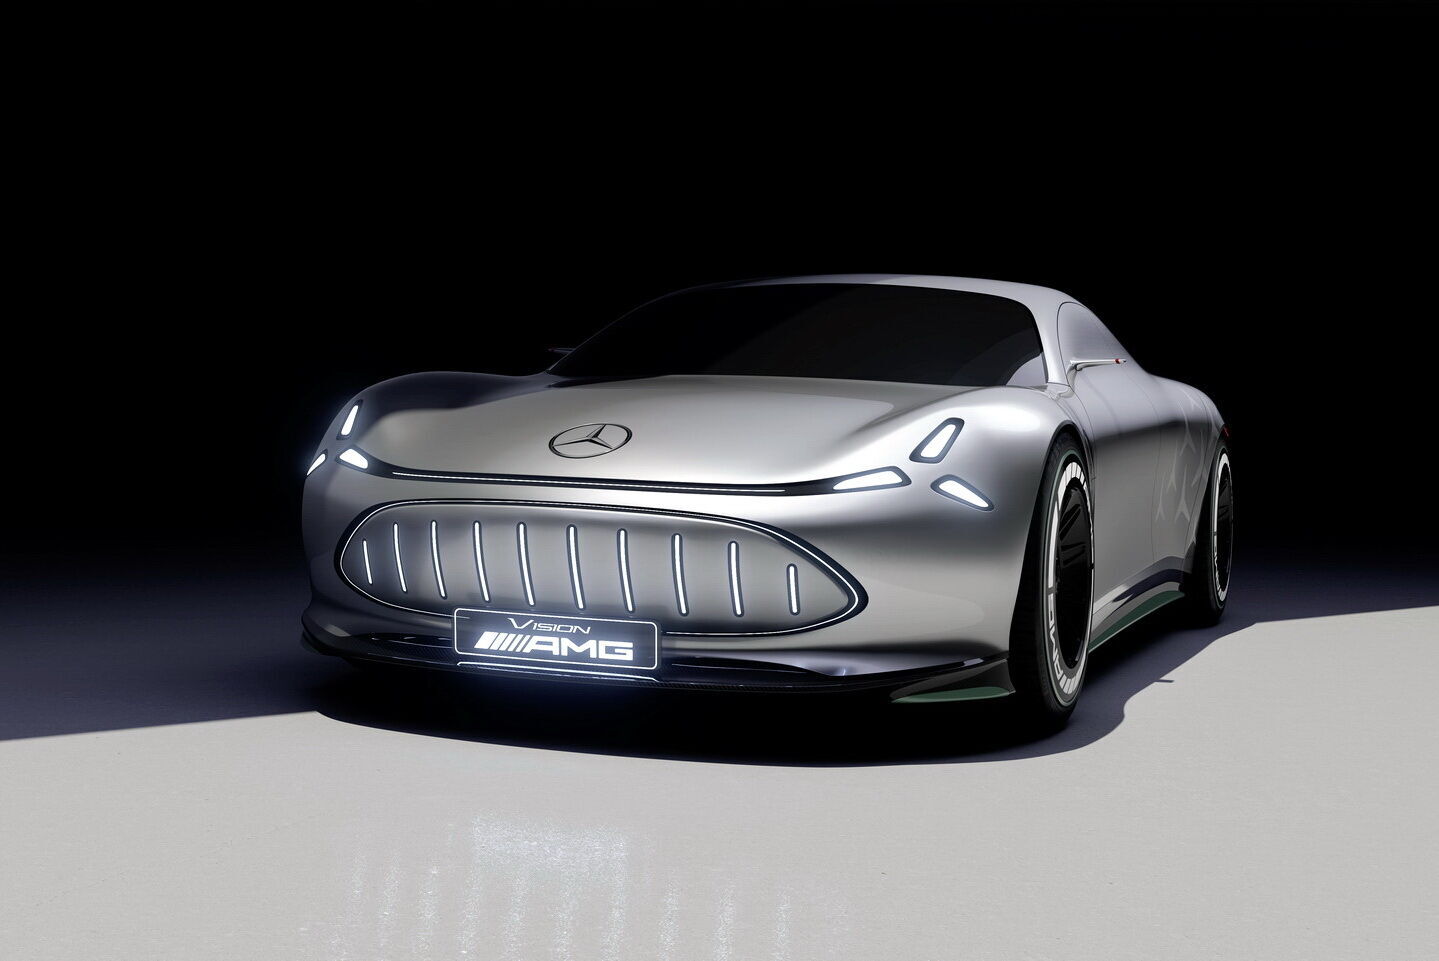 Vision AMG отримав незвичайну світлотехніку, що нагадує трипроменеву зірку – символ бренду Mercedes-Benz